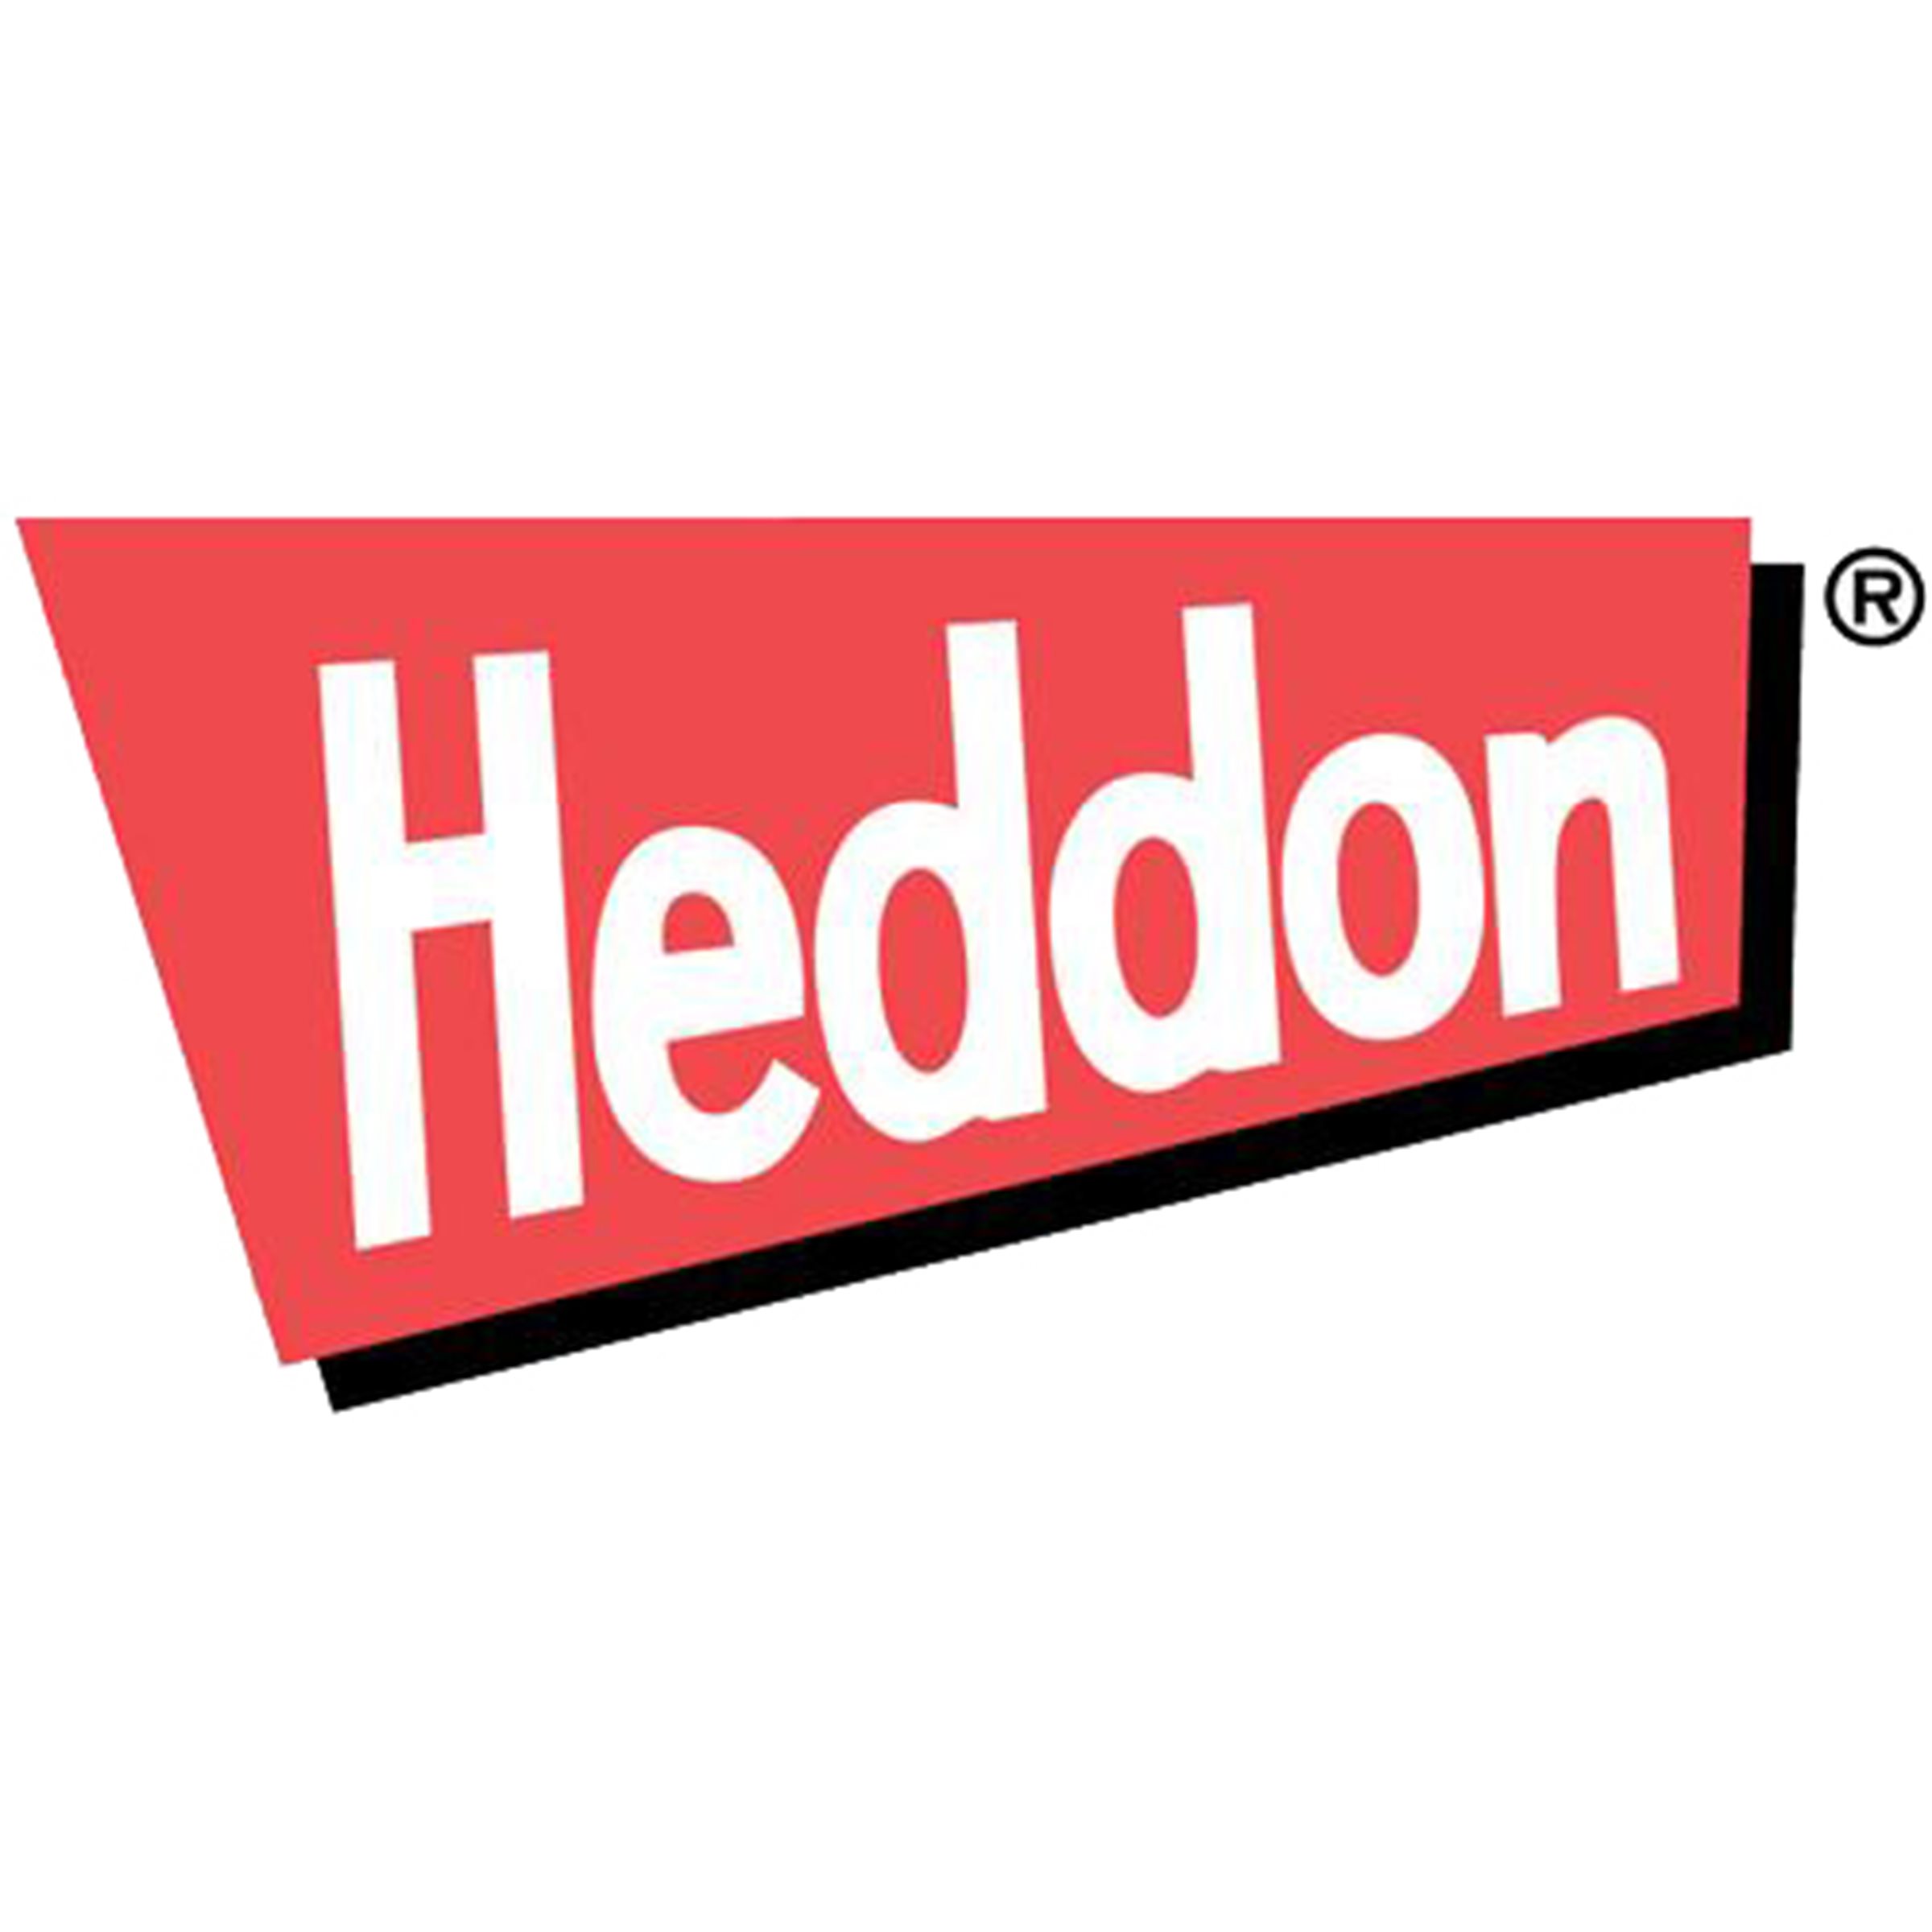 A_heddon_logo